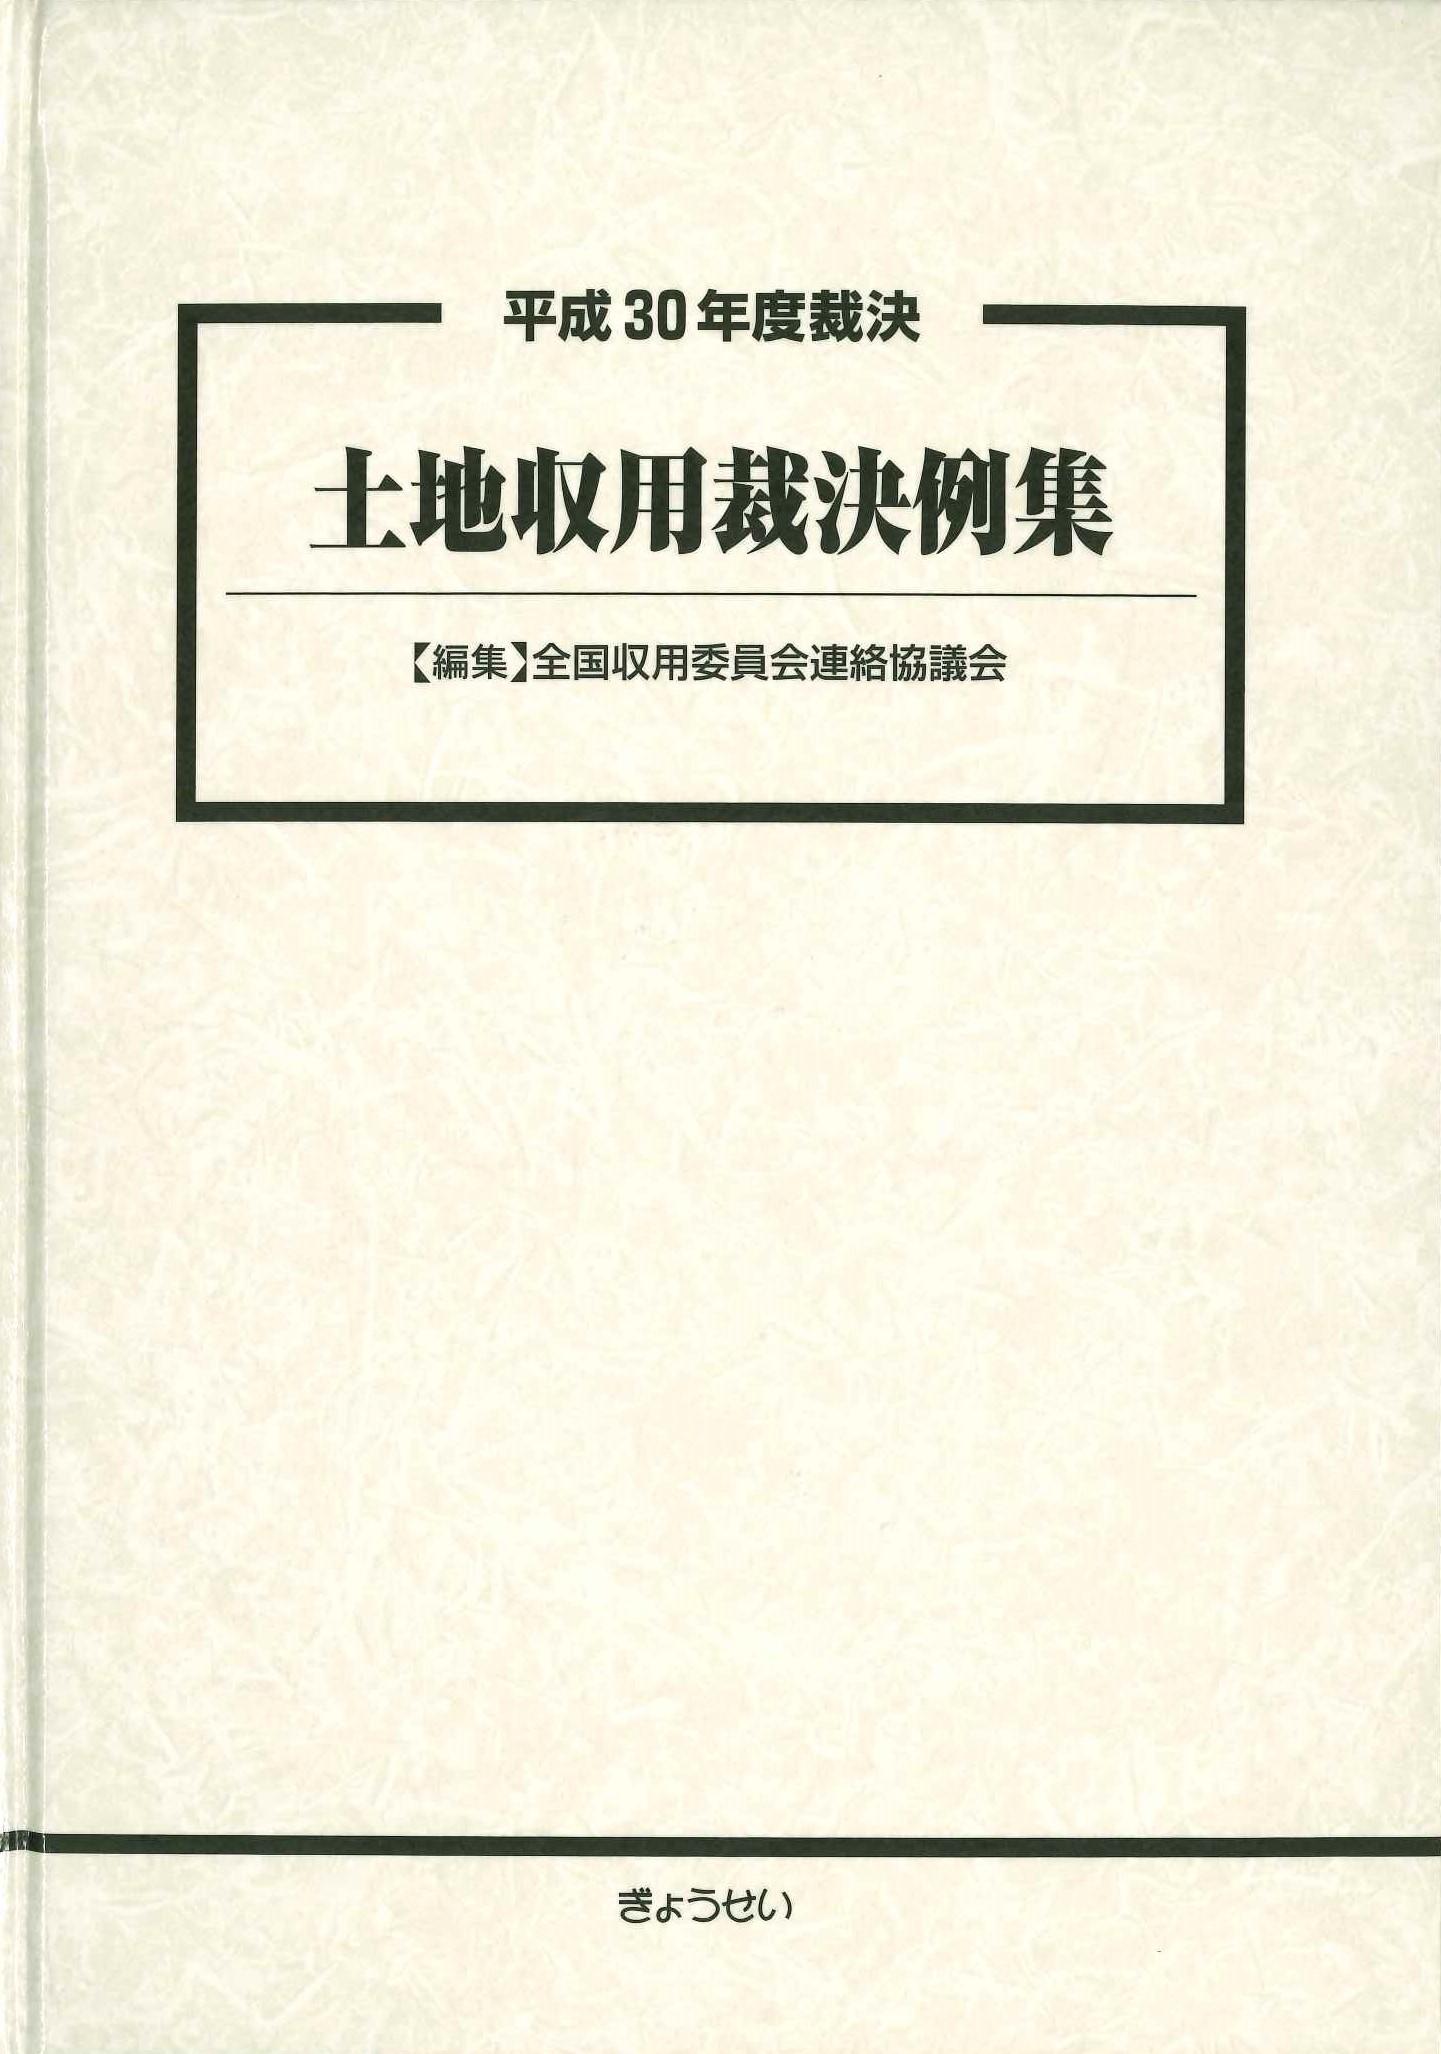 book_1581.jpg